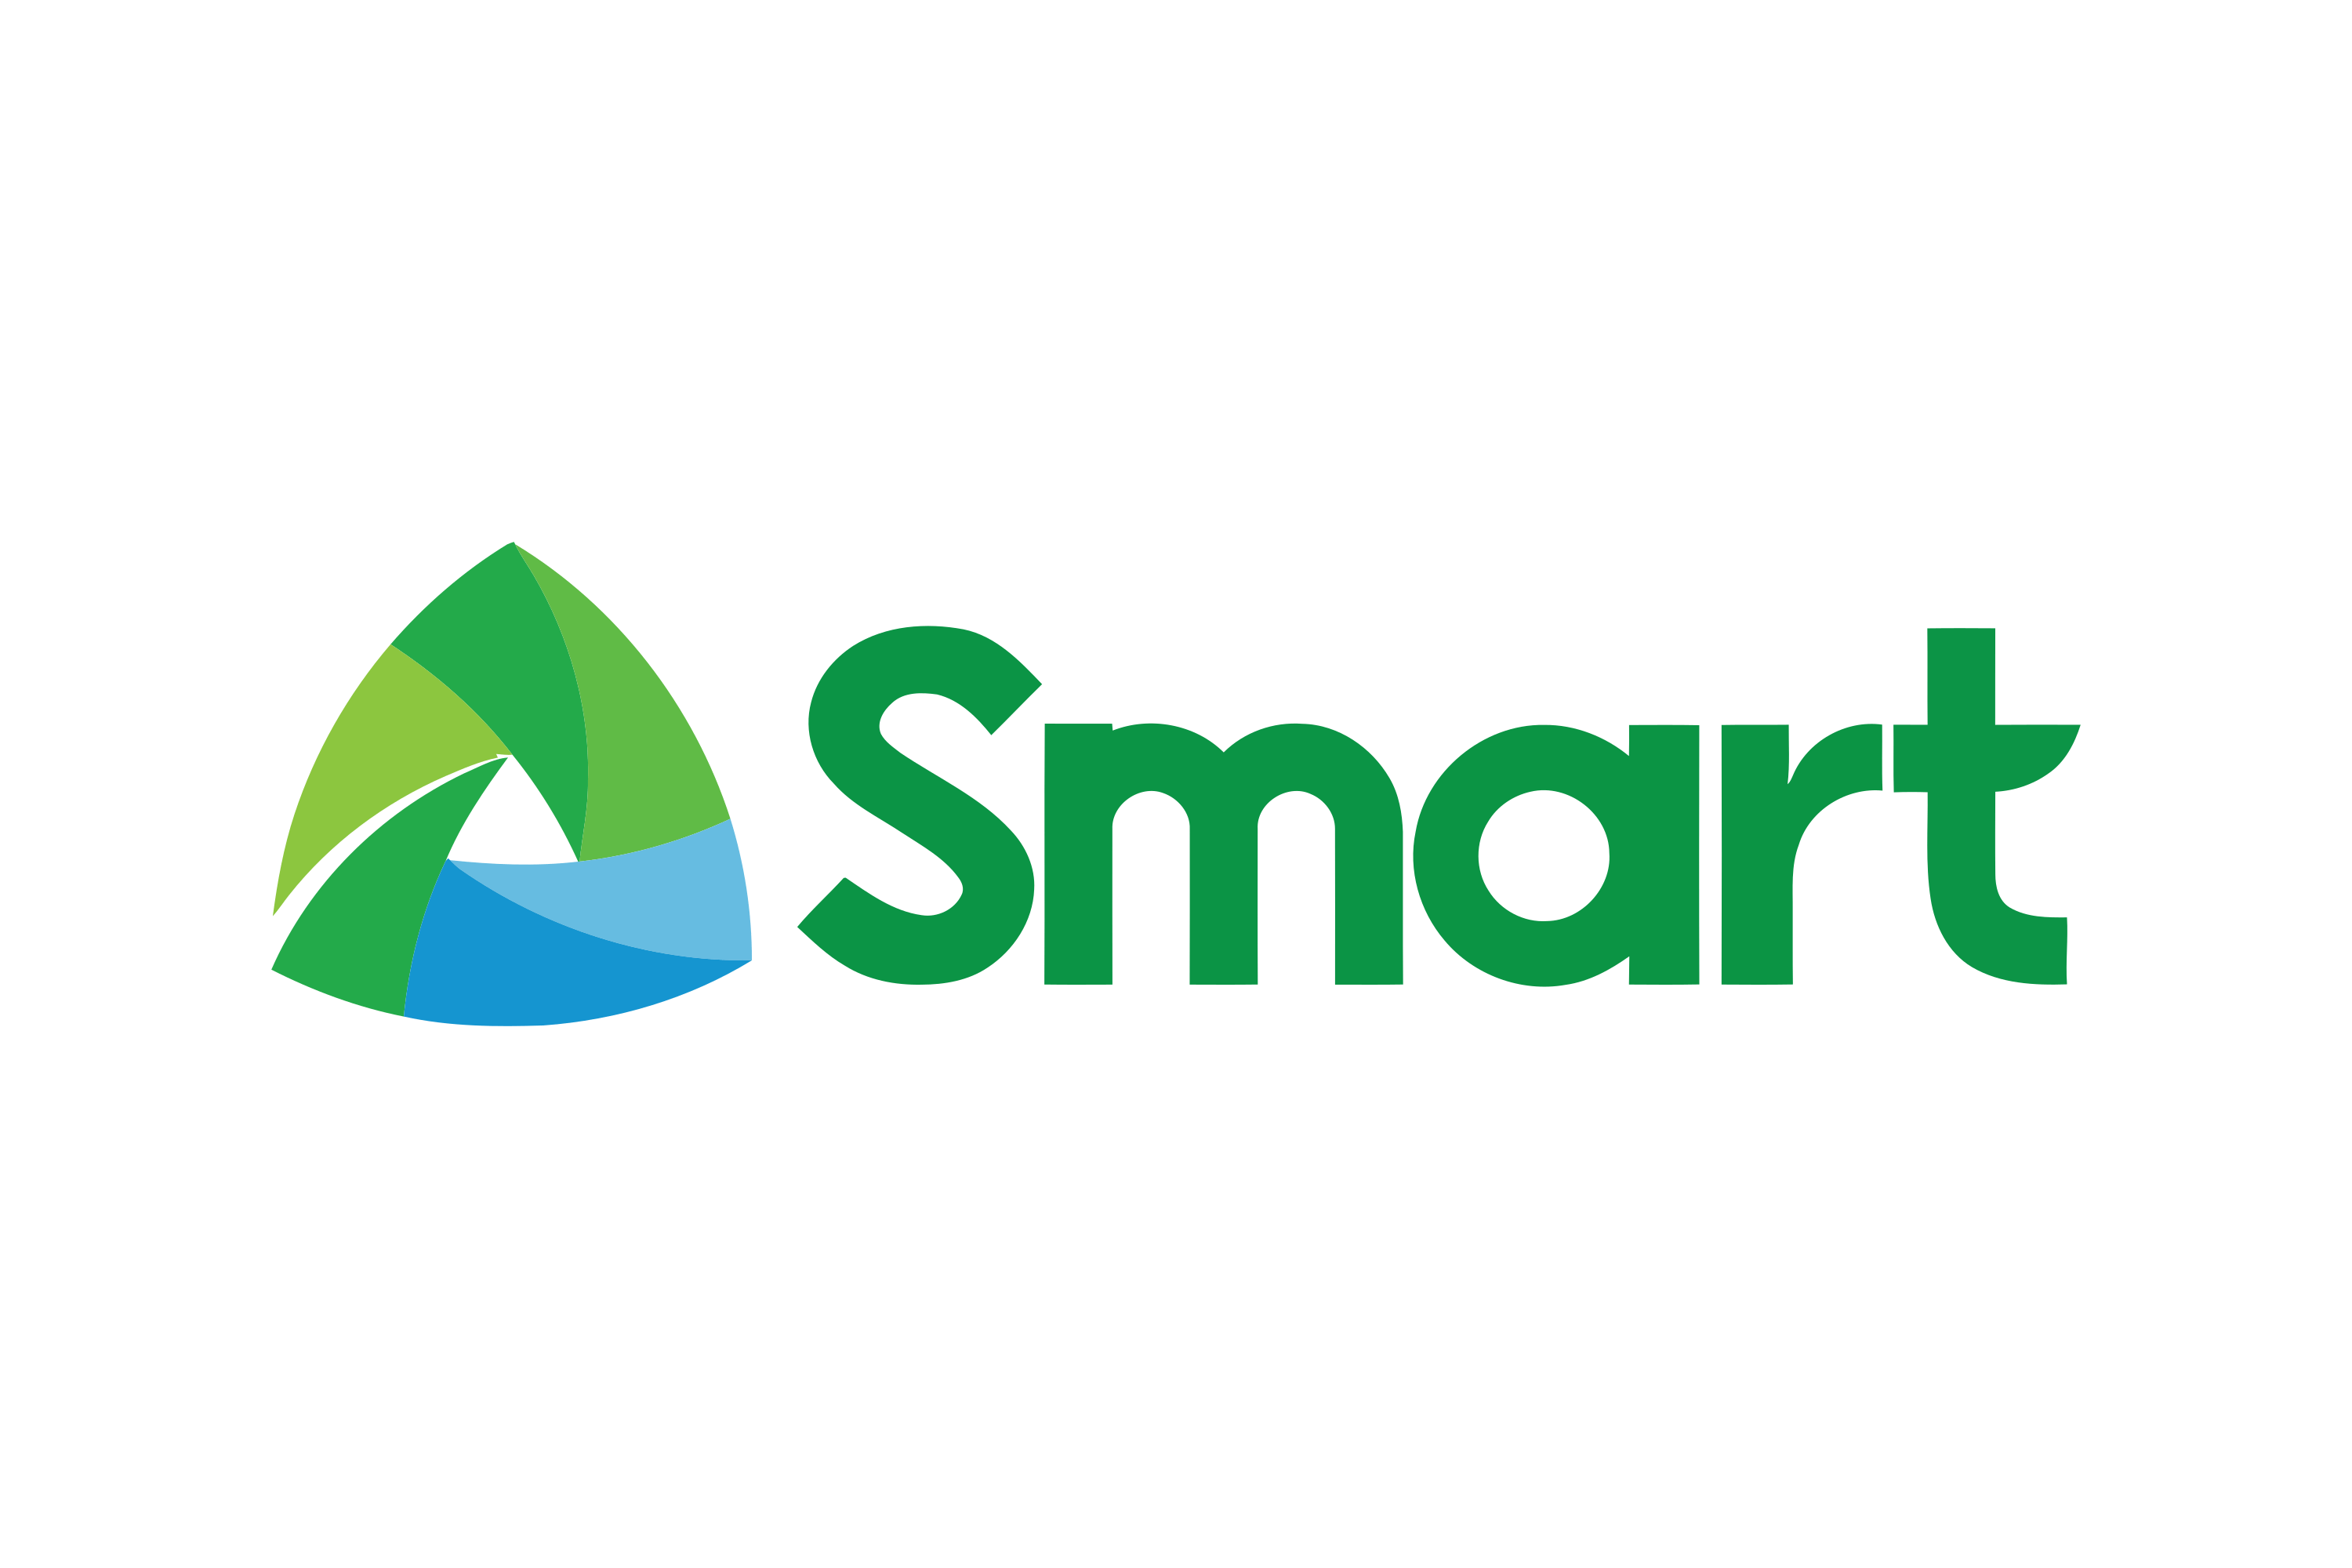 Download Smart Logo in SVG Vector or PNG File Format 